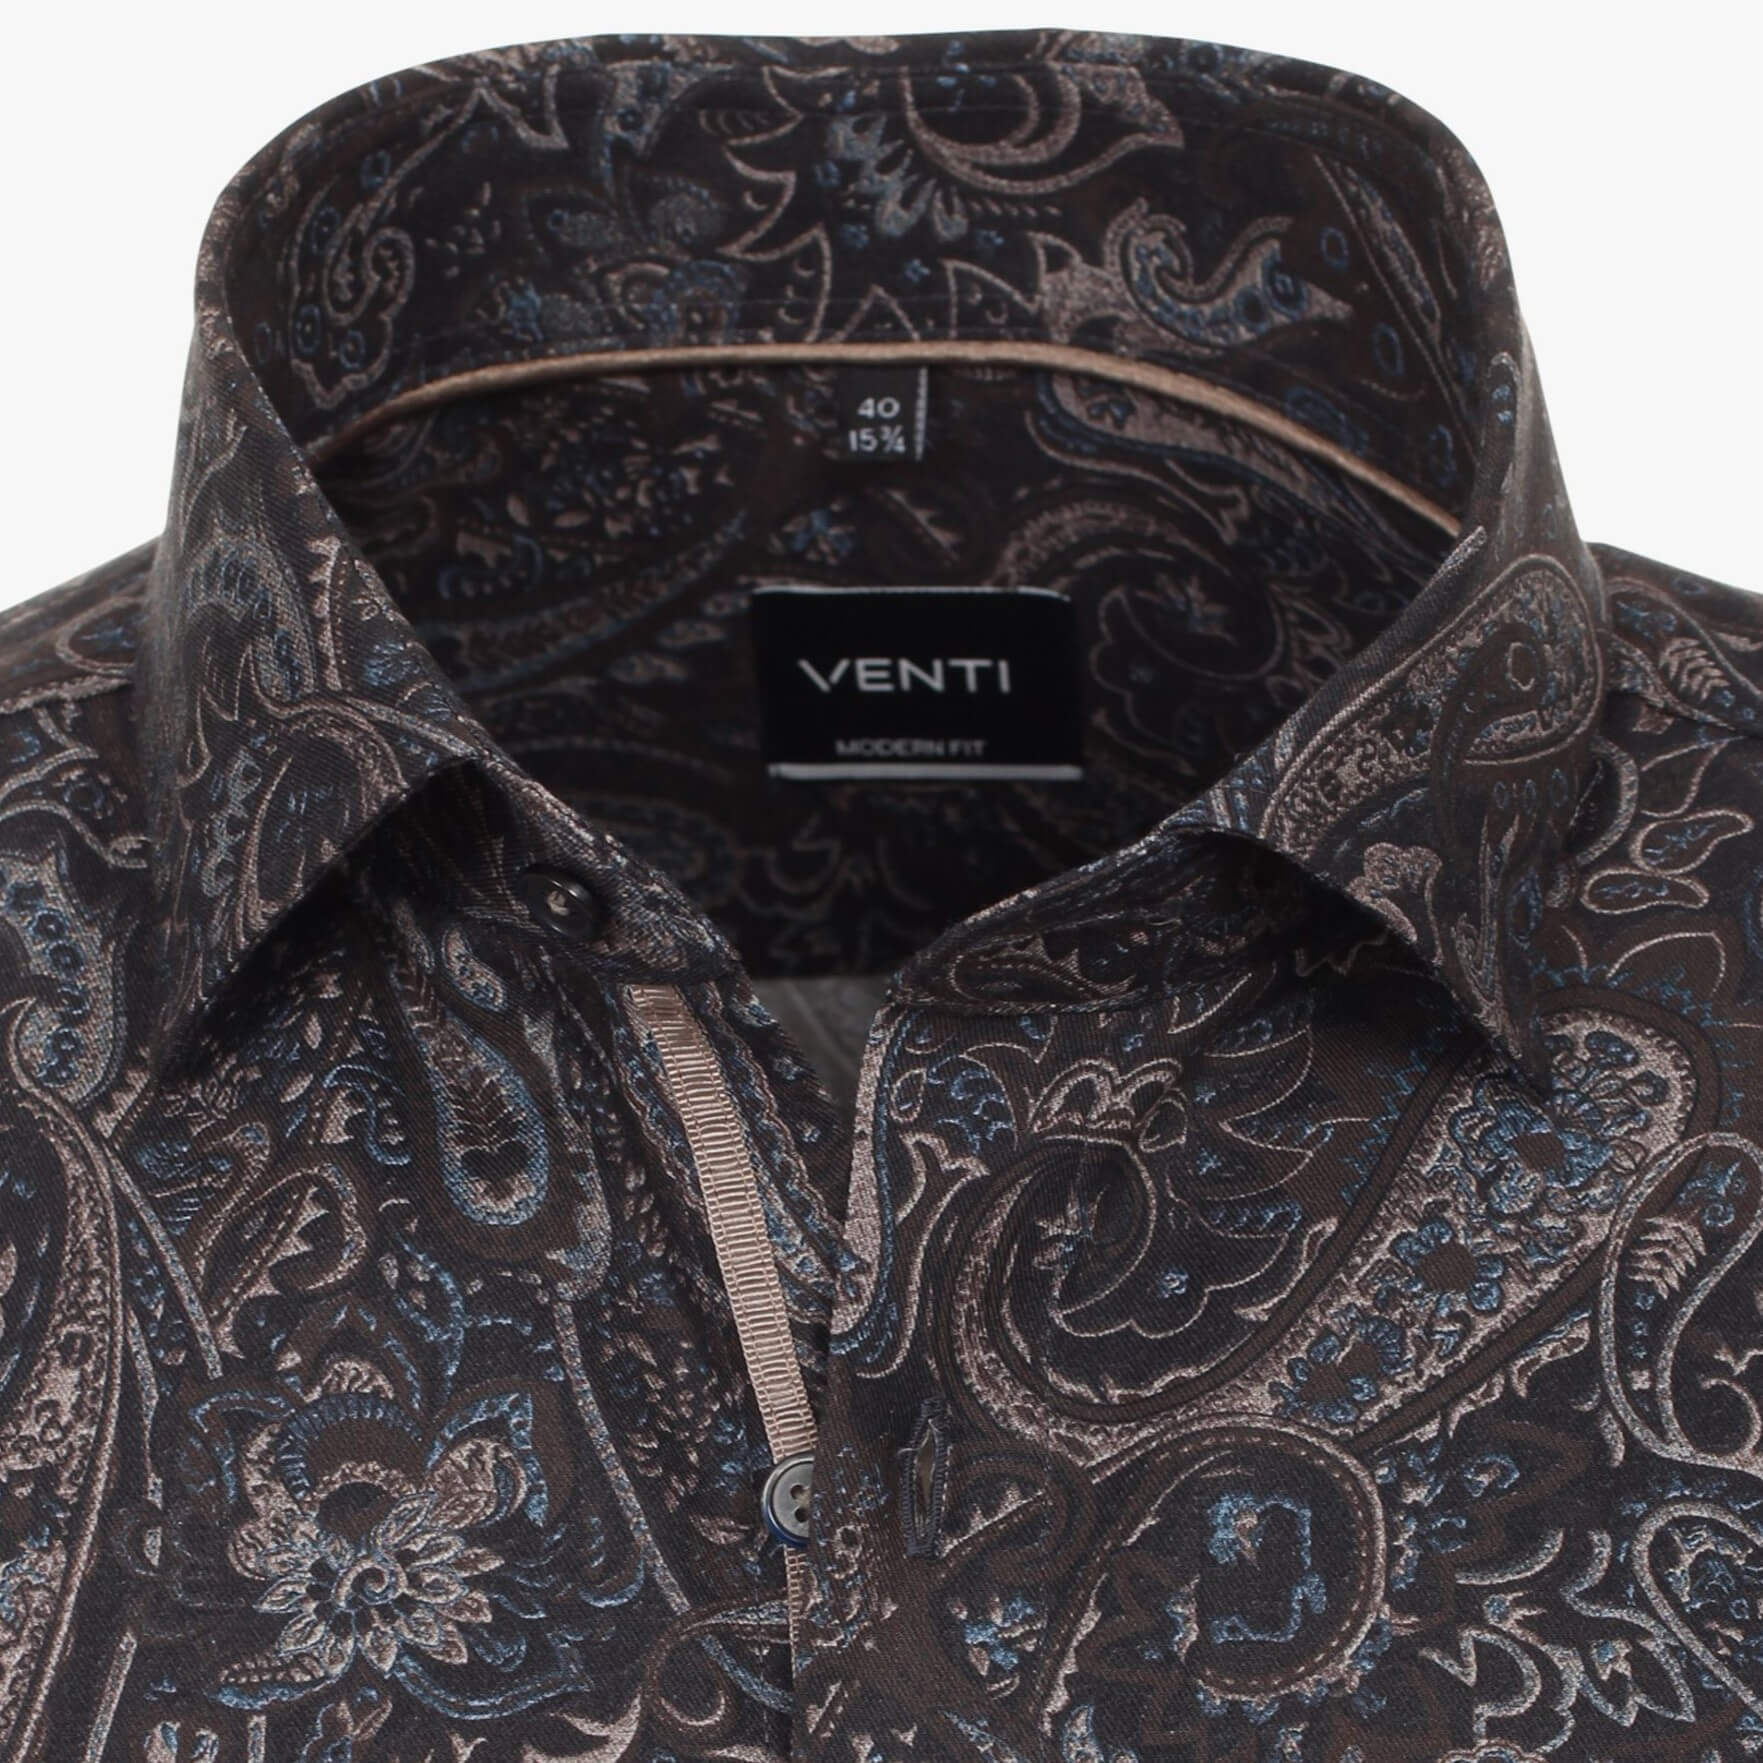 Сорочка мужская Venti Modern Fit 134135100-750 с эпатажным рисунком